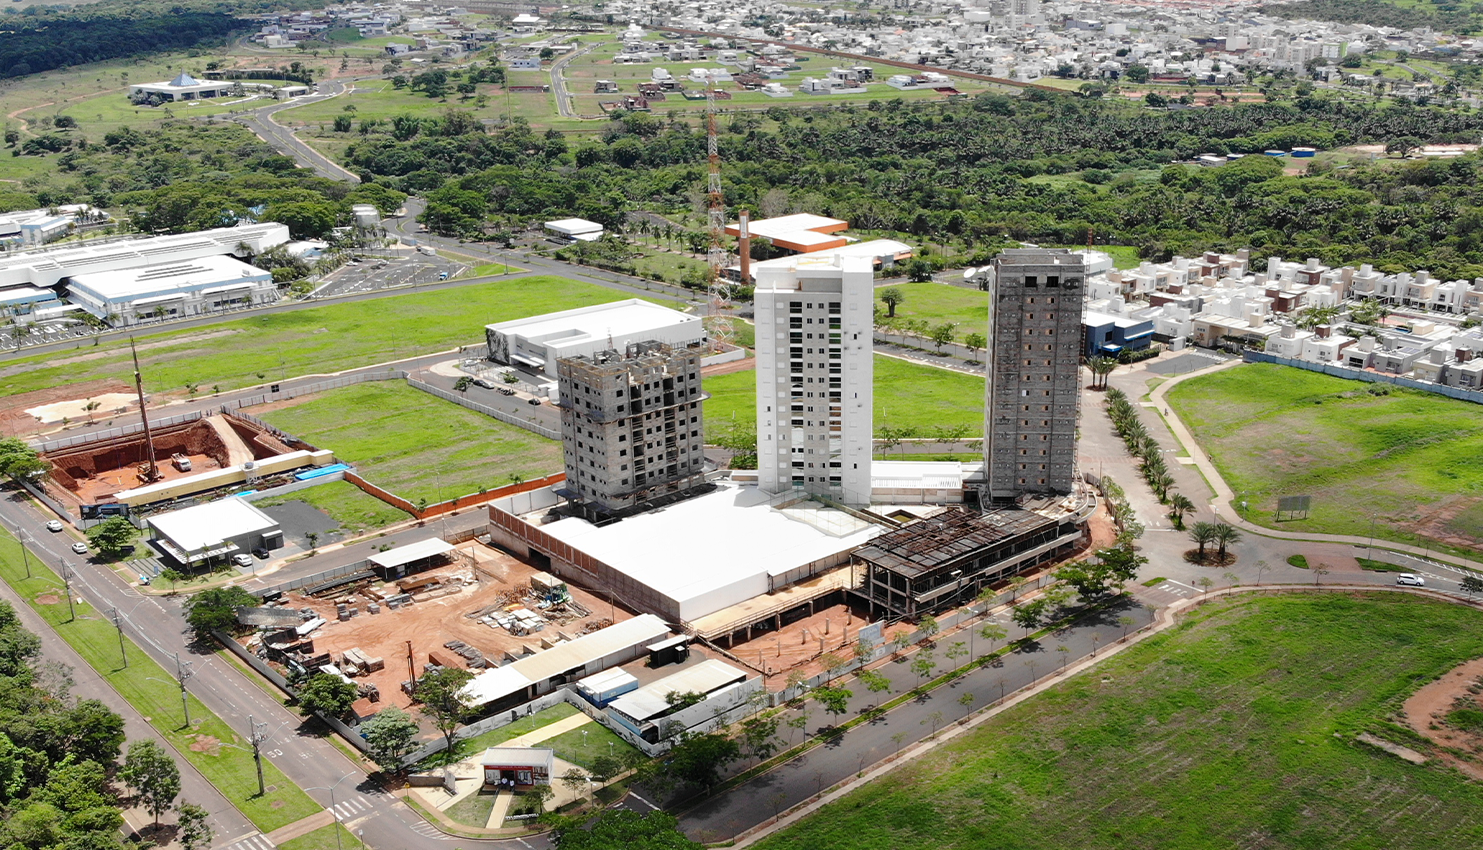 Imagem aerea do empreendimento Solar do Cerrado